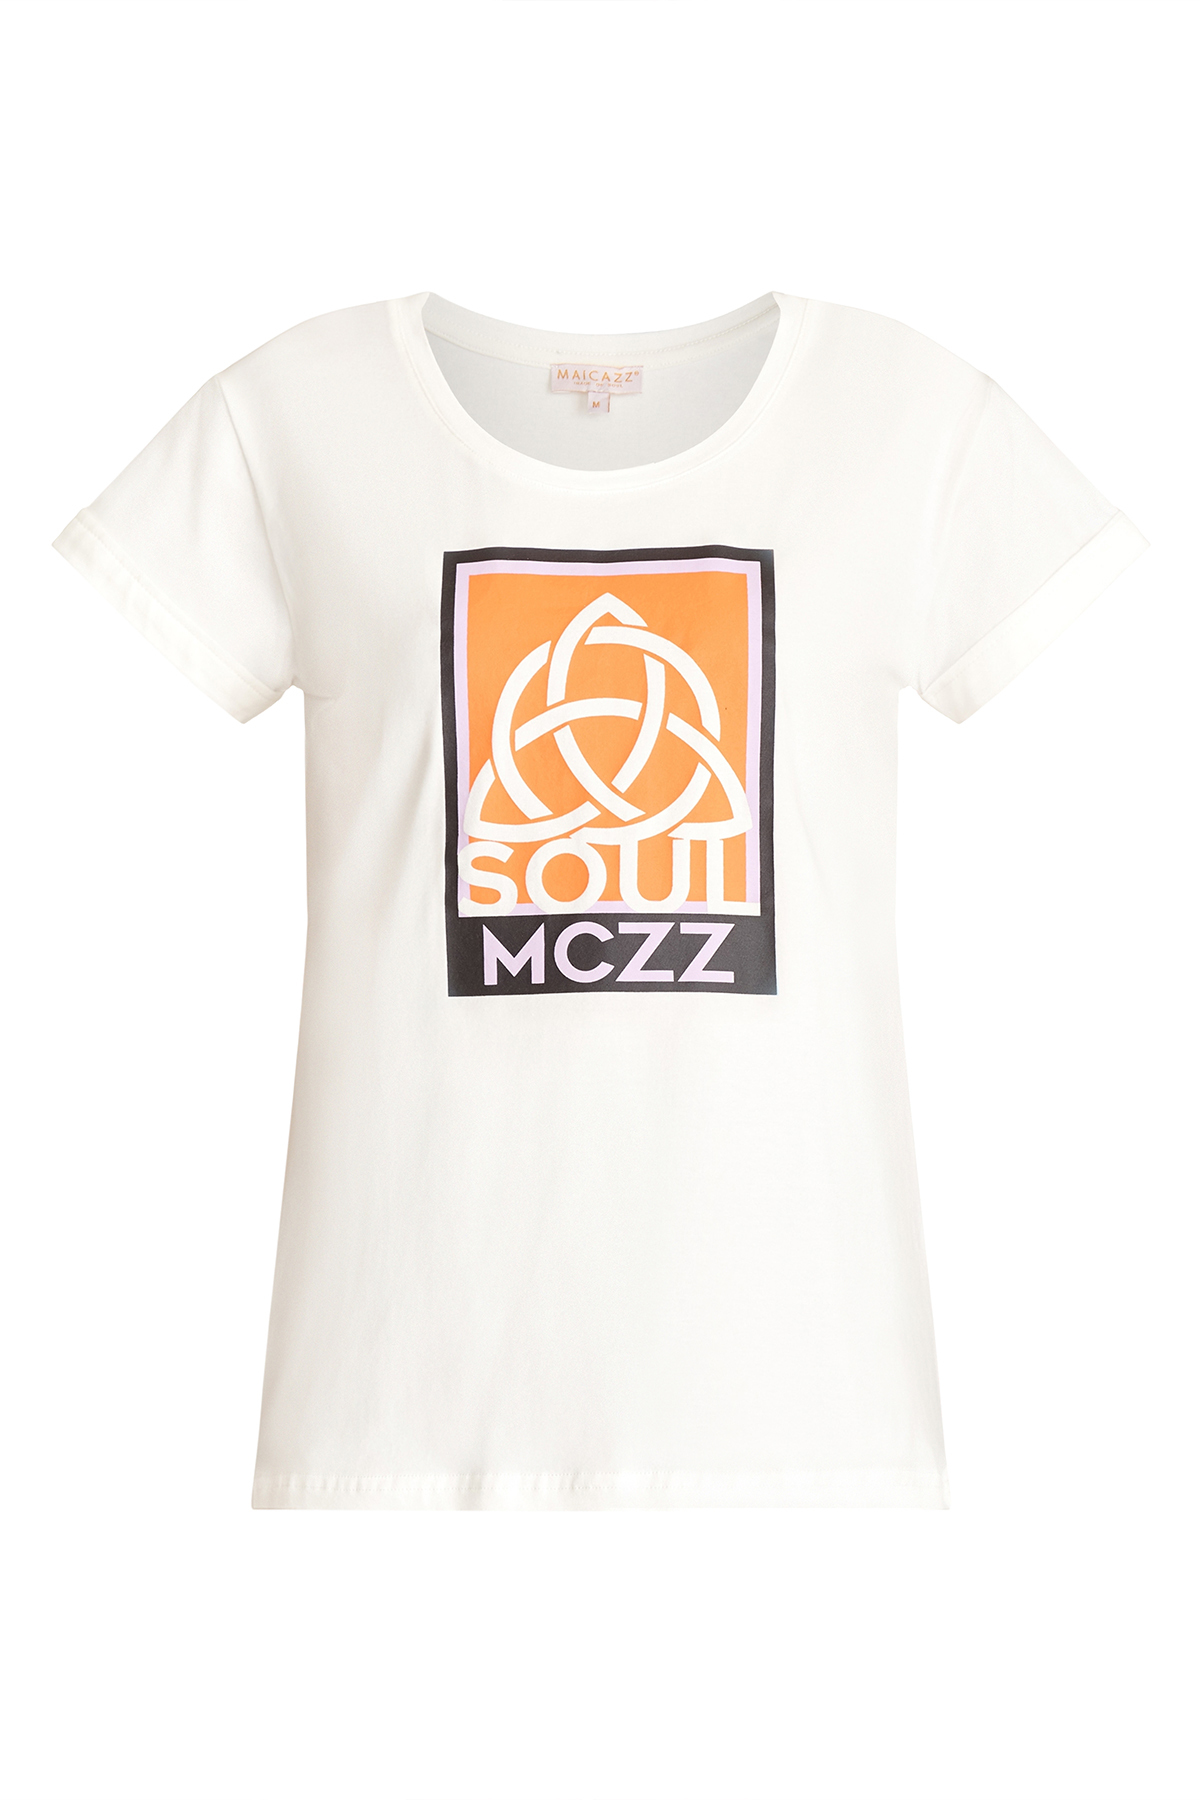 MAICAZZ T-shirt Ine Peachy